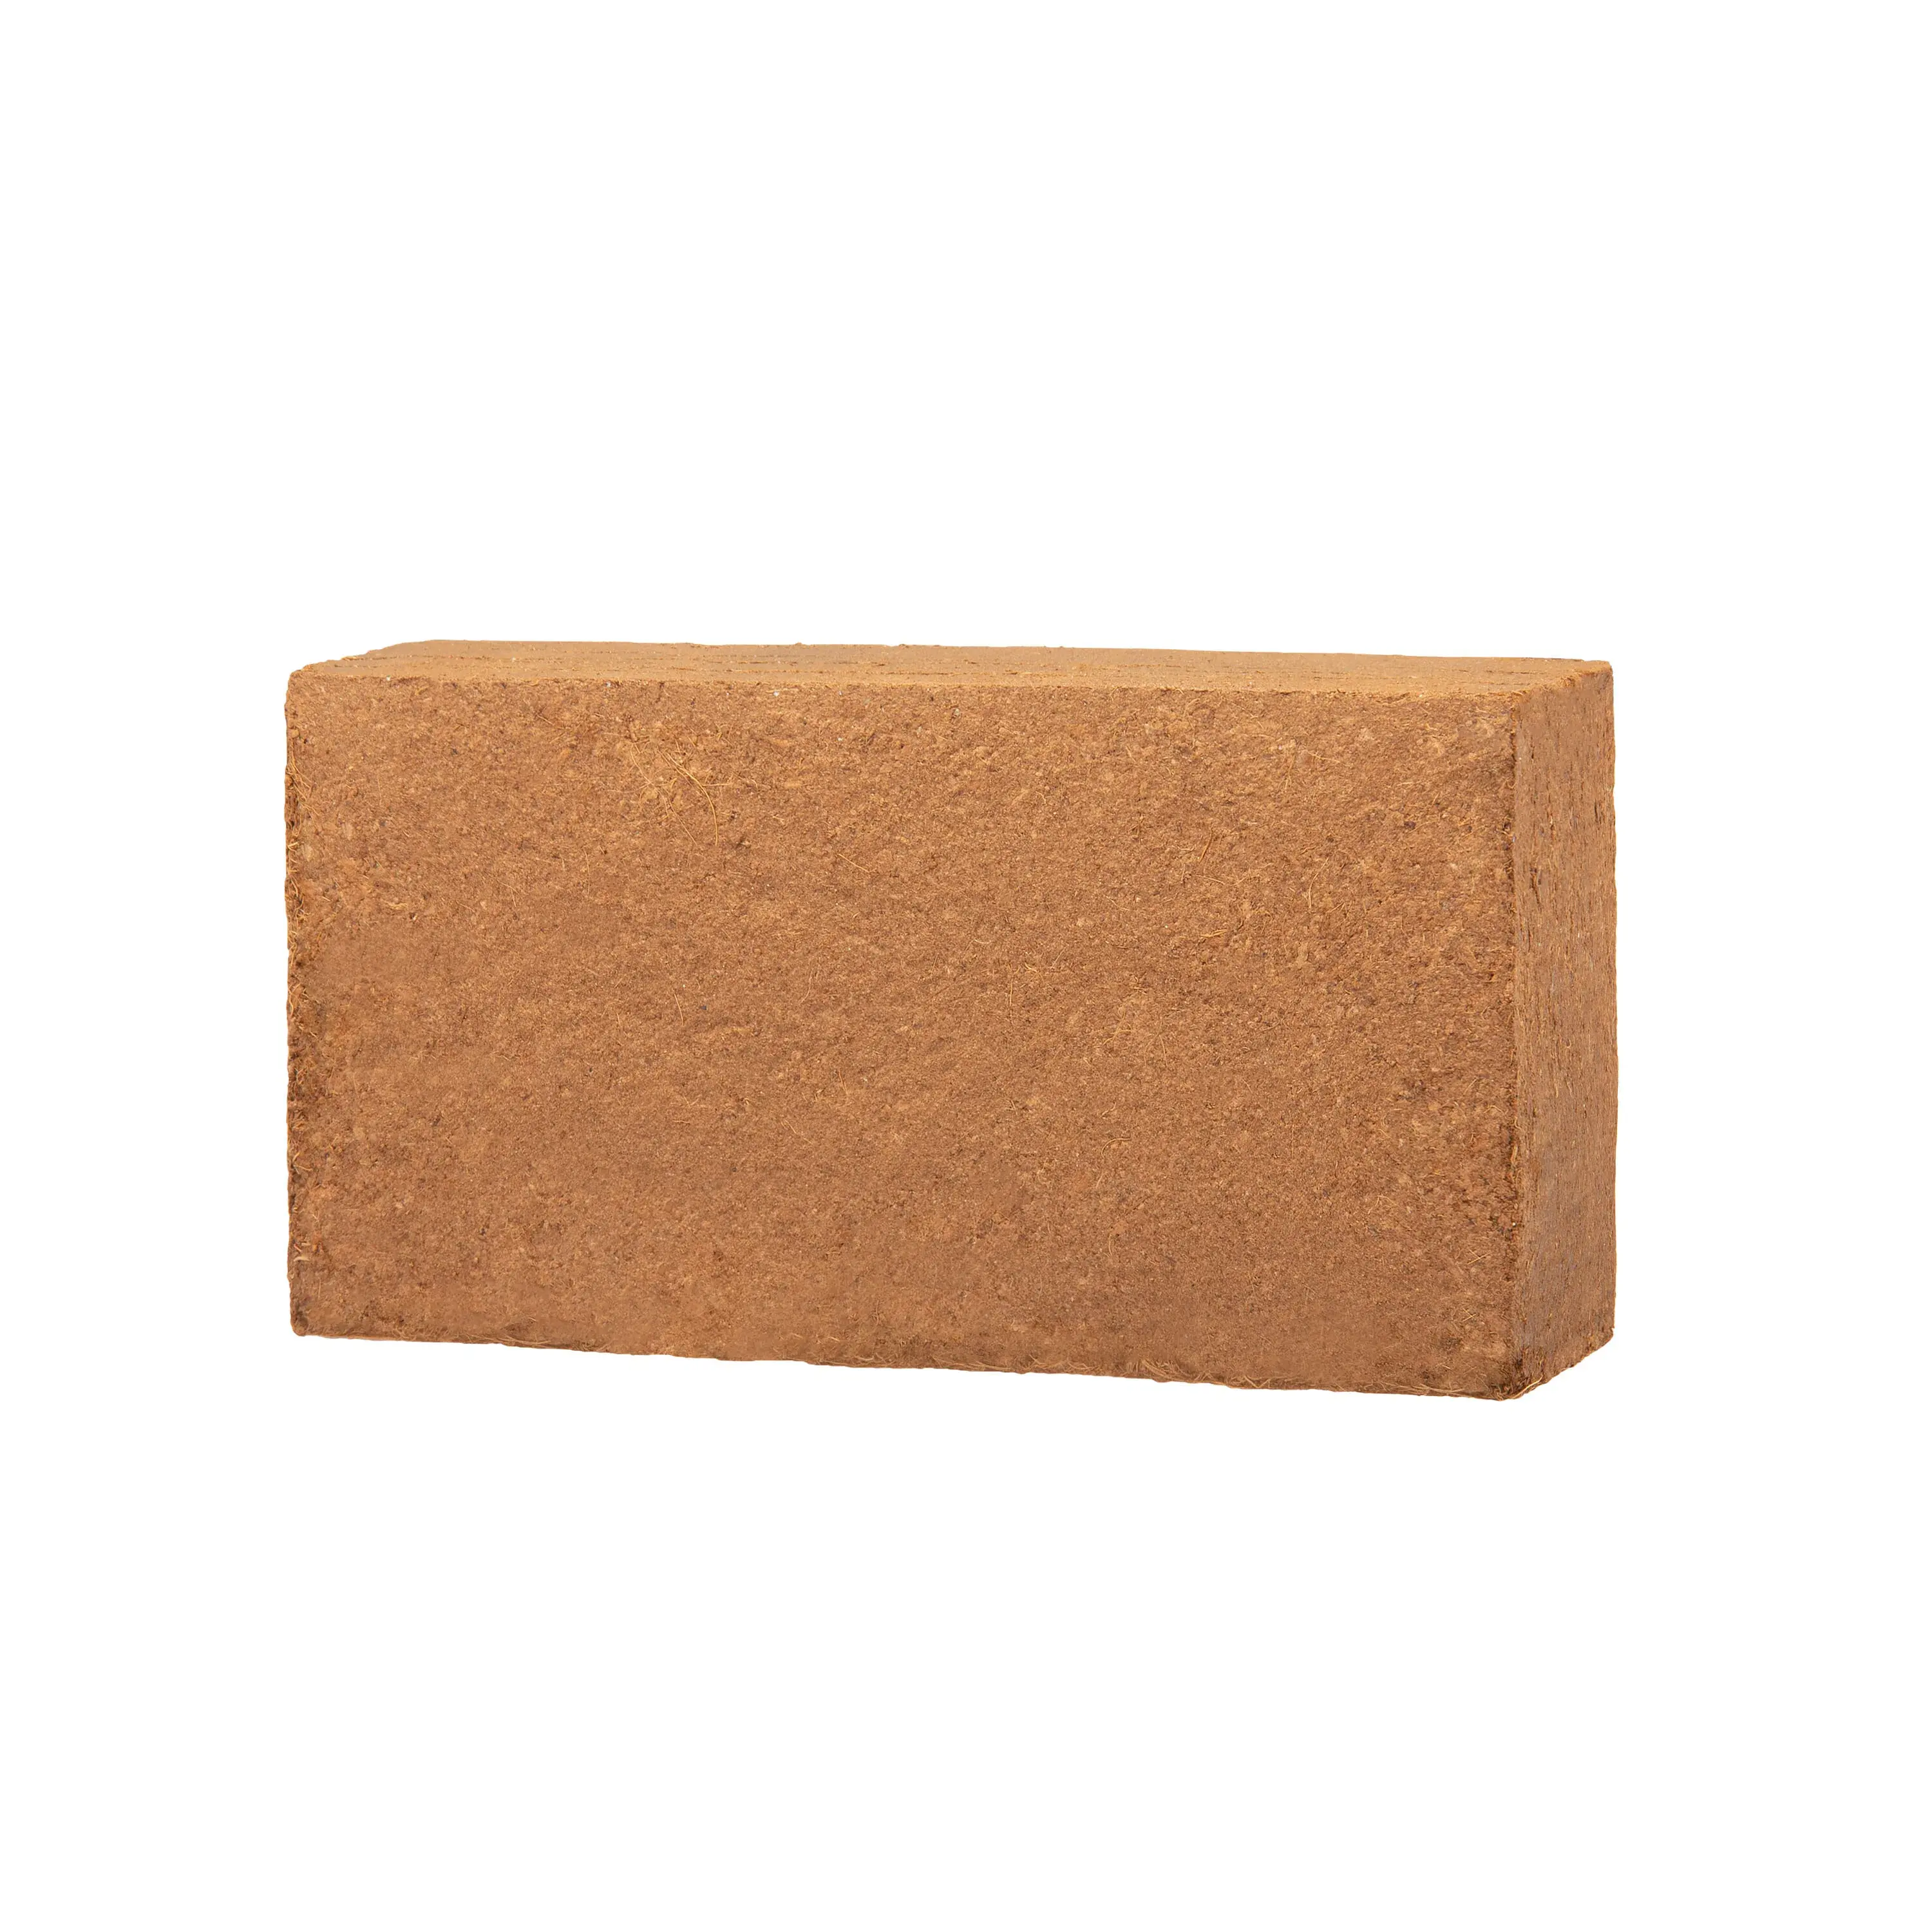 Coco Peat Bon Prix Et Matériau De Haute Qualité Fabriqué Par L'Inde Pratique 650g Coco Mexique Peat Bricks En Gros En Vrac De Noix De Coco